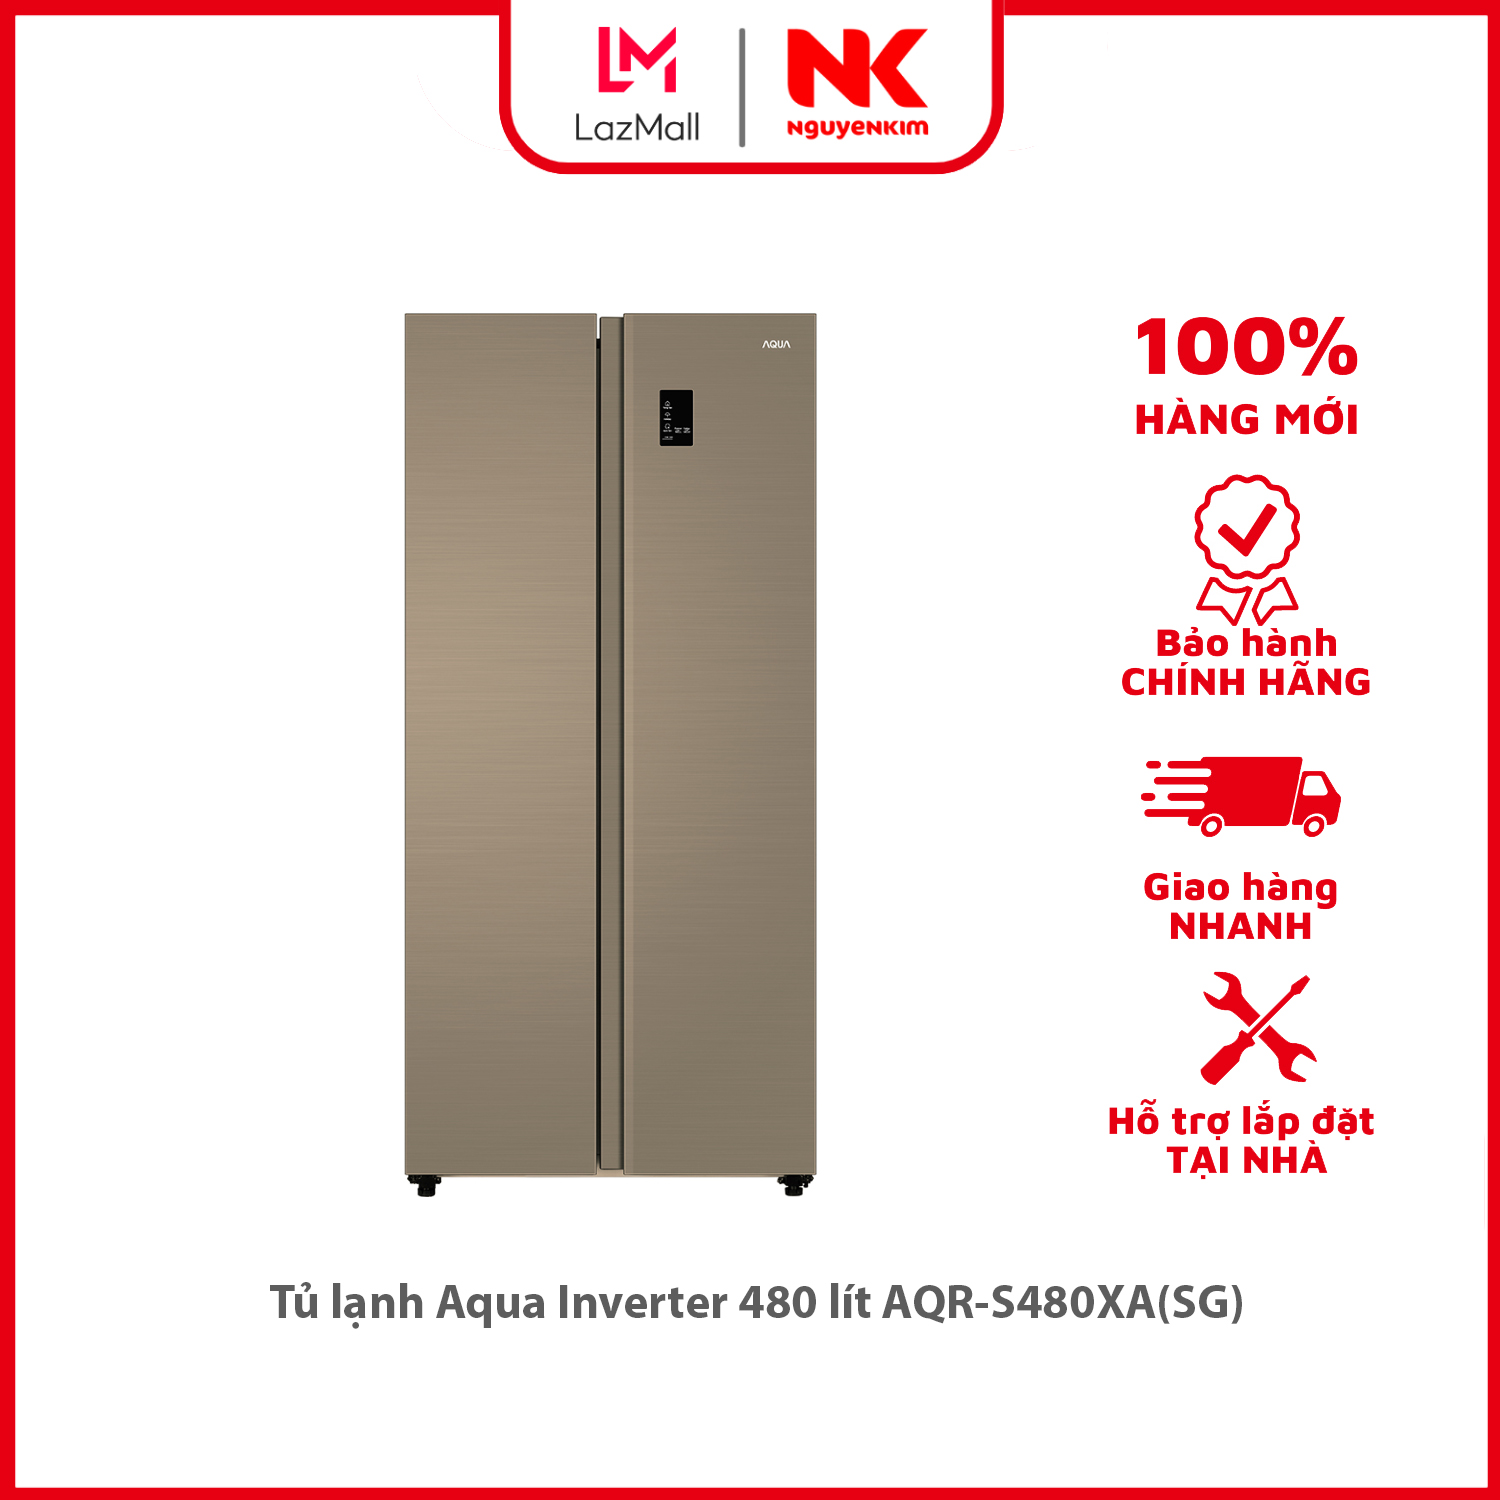 Tủ lạnh Aqua Inverter 480 lít AQR-S480XASG